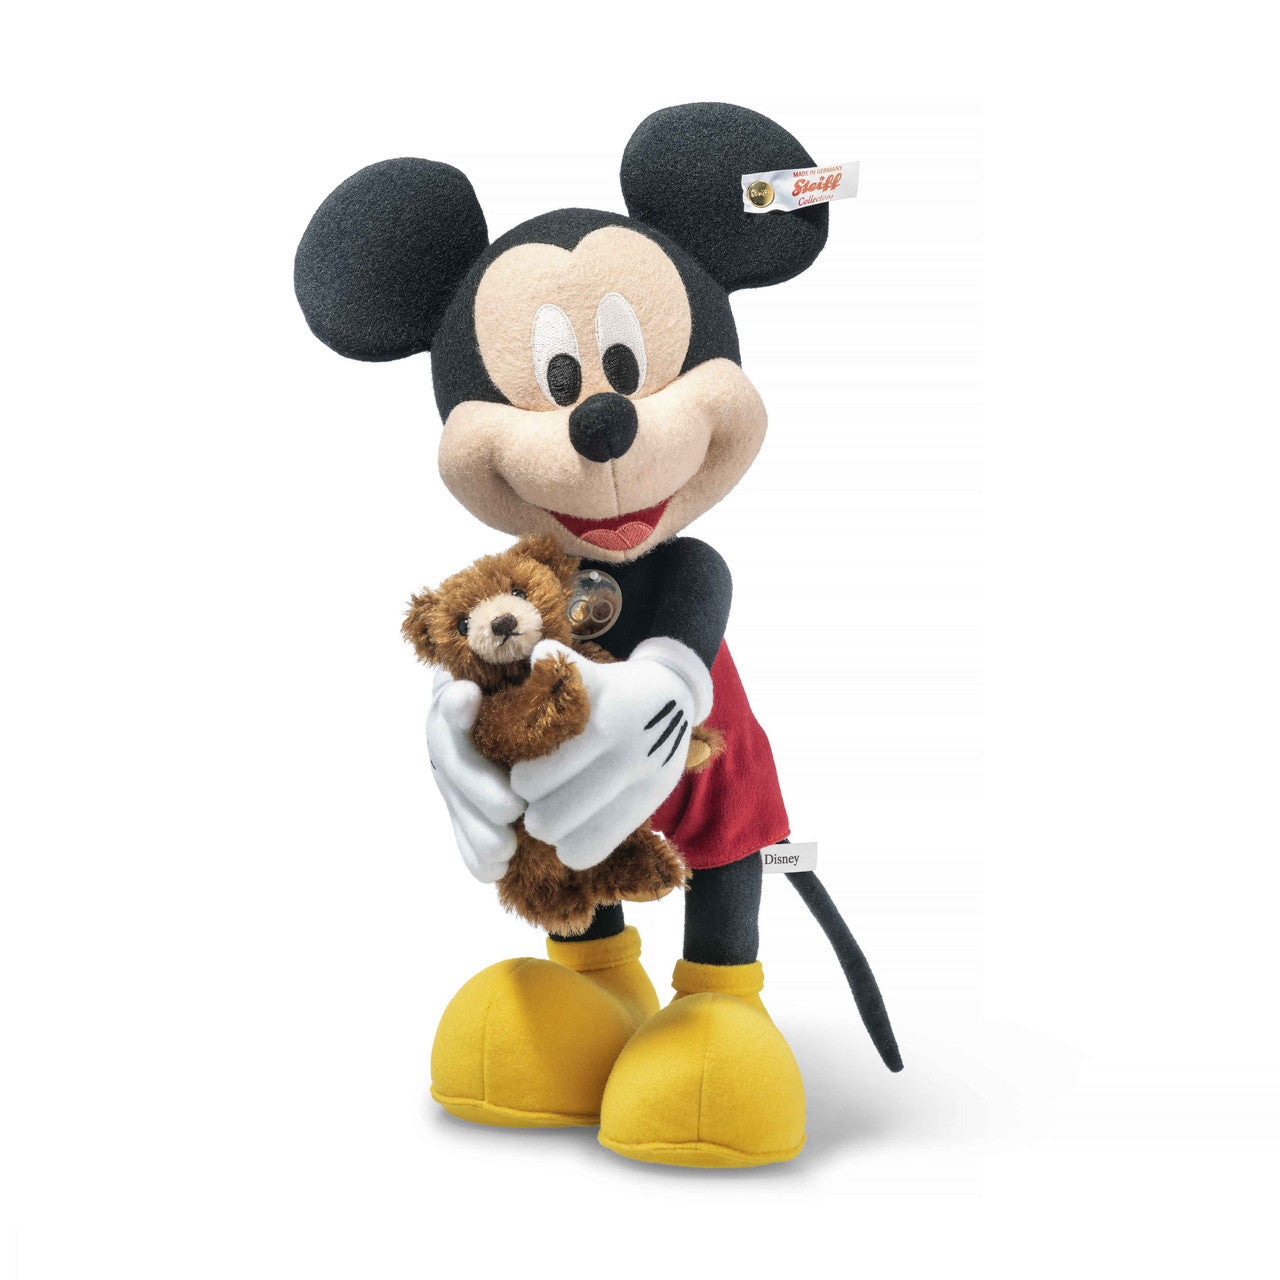 Steiff Mickey Mouse with Teddy Bear 100 Anniversary